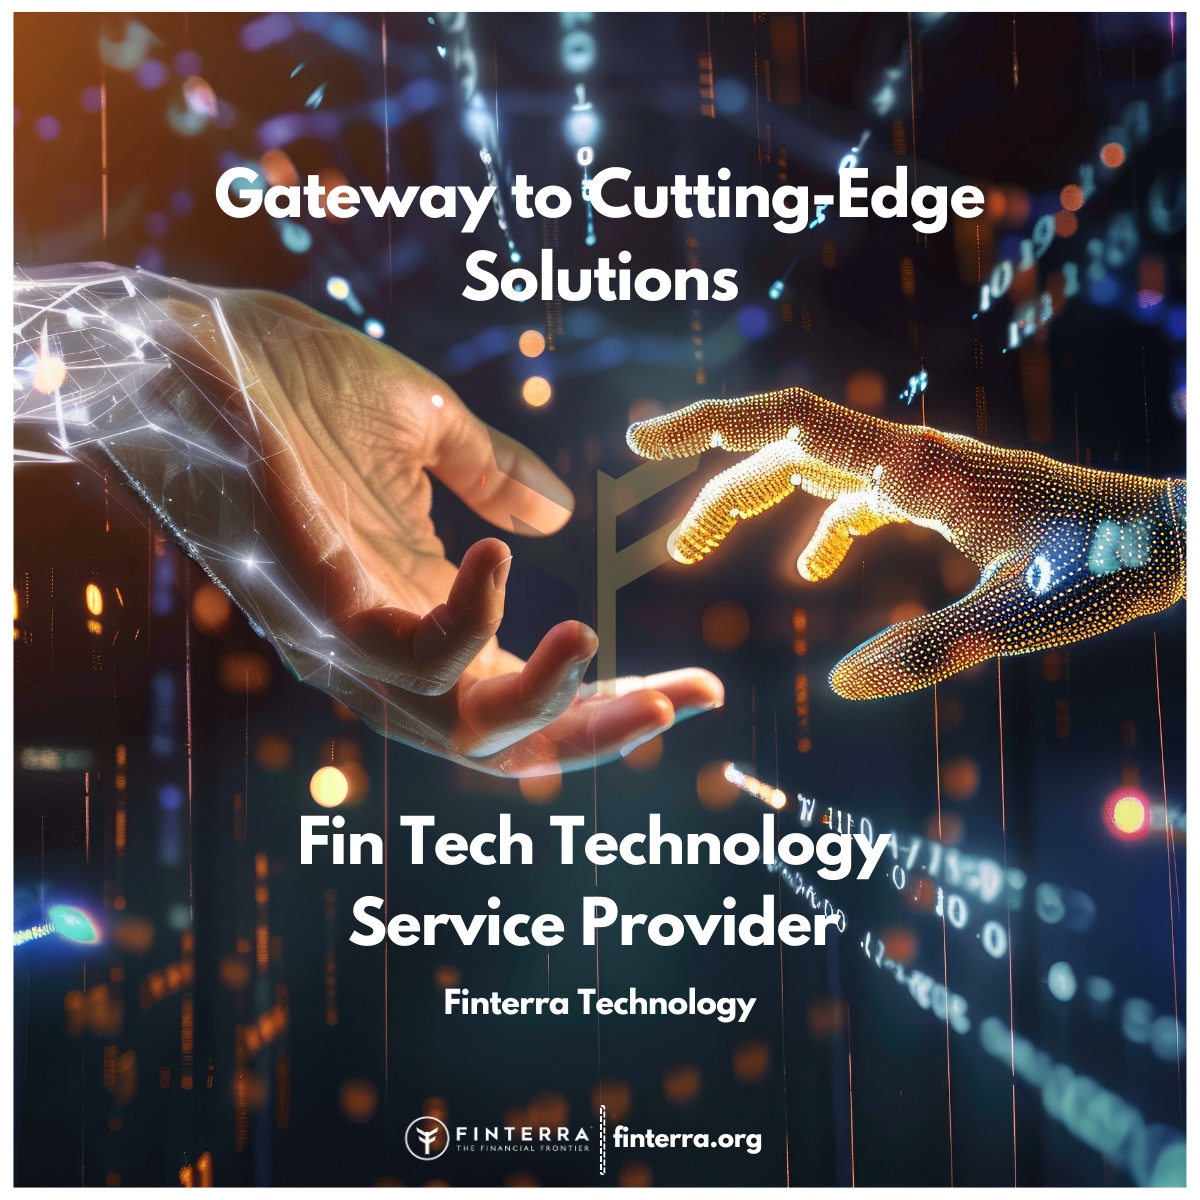 Fin Tech Technology Service Provider { finterra.org }
#FinTech #Innovation #TechnologySolutions